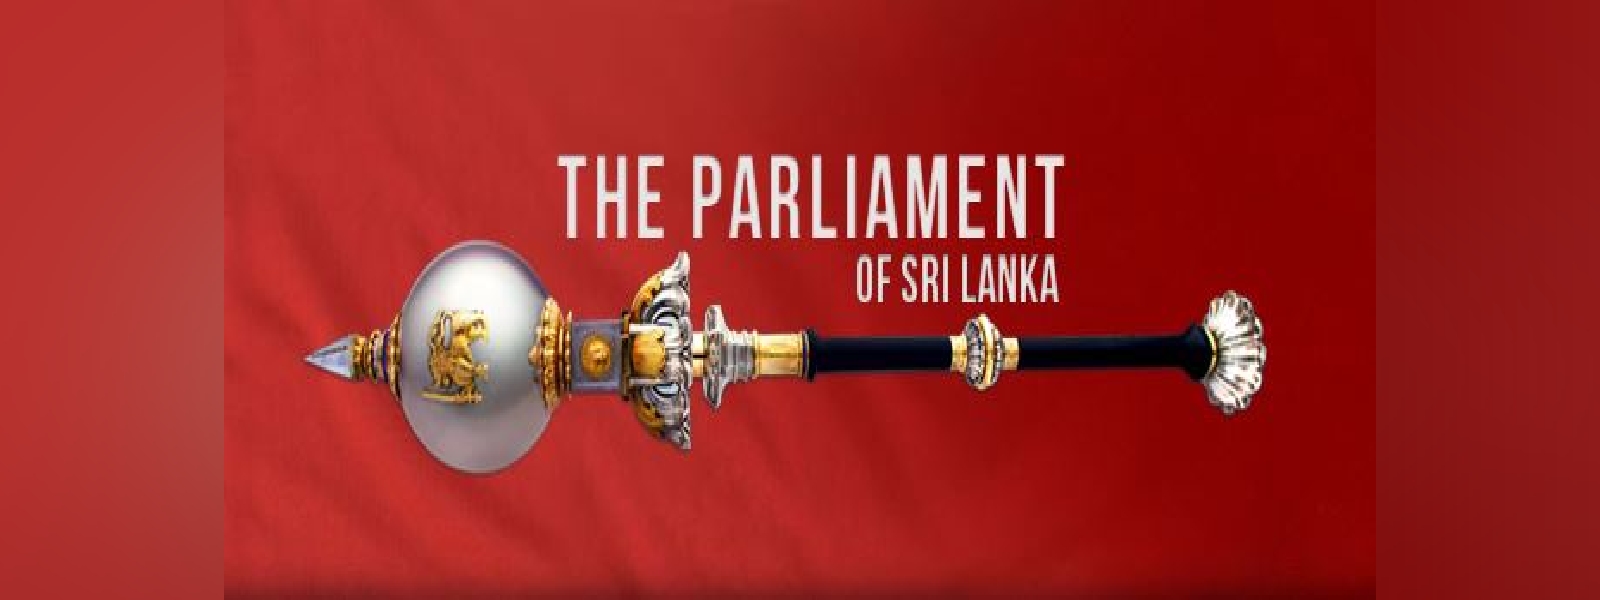 42 Sri Lankan lawmakers go independent ; Govt majority in limbo